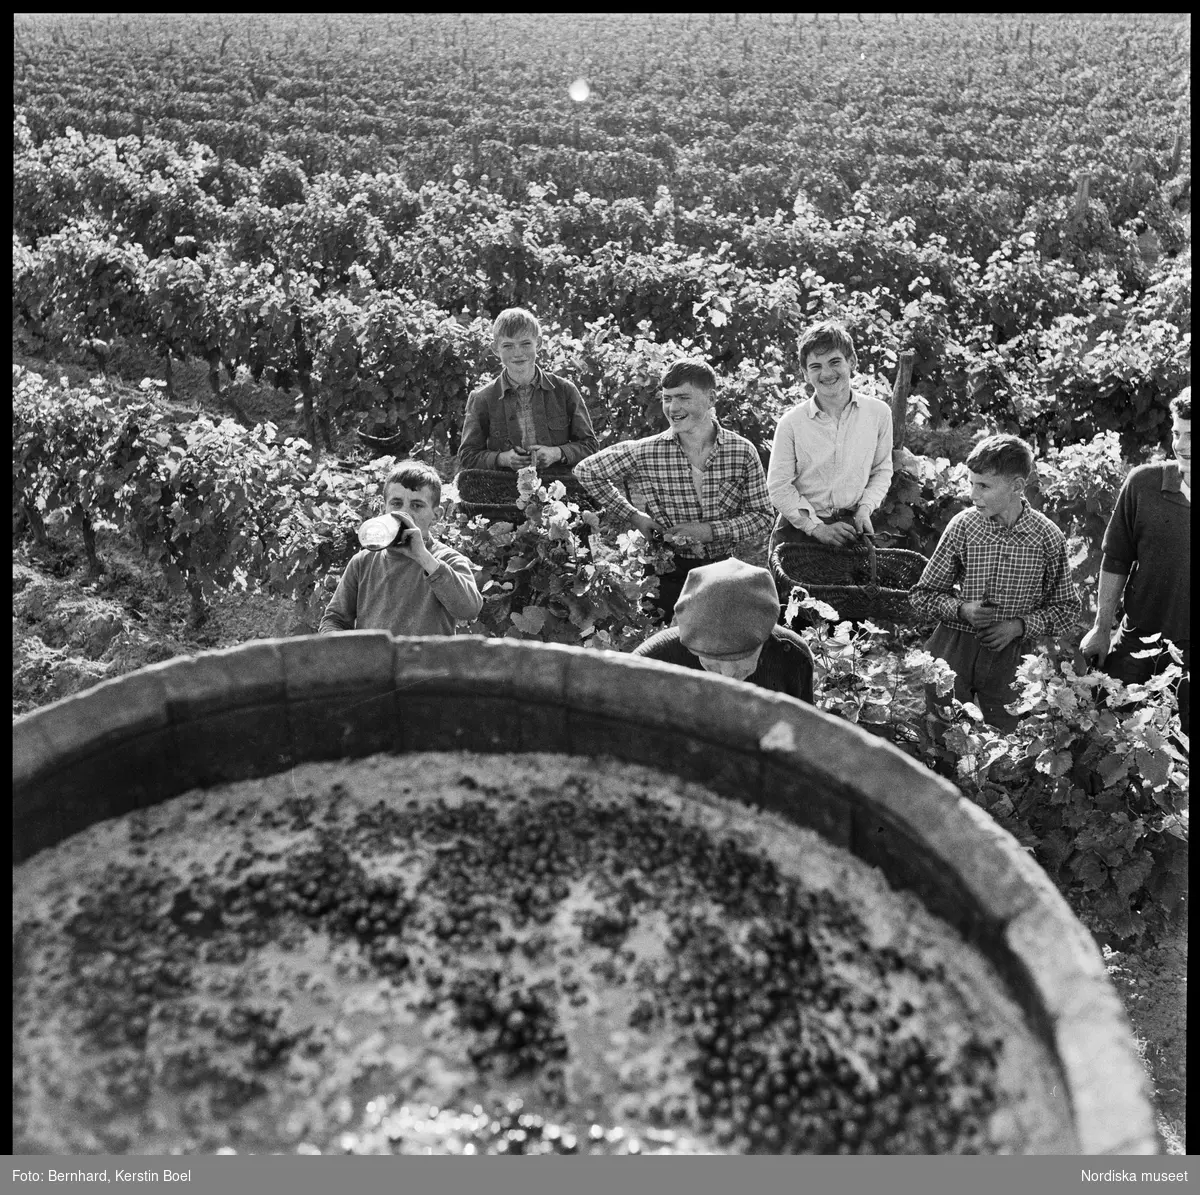 Frankrike, Loire-dalen, Muscadet.
Tunna med druvor. Glada vingårdsarbetare.